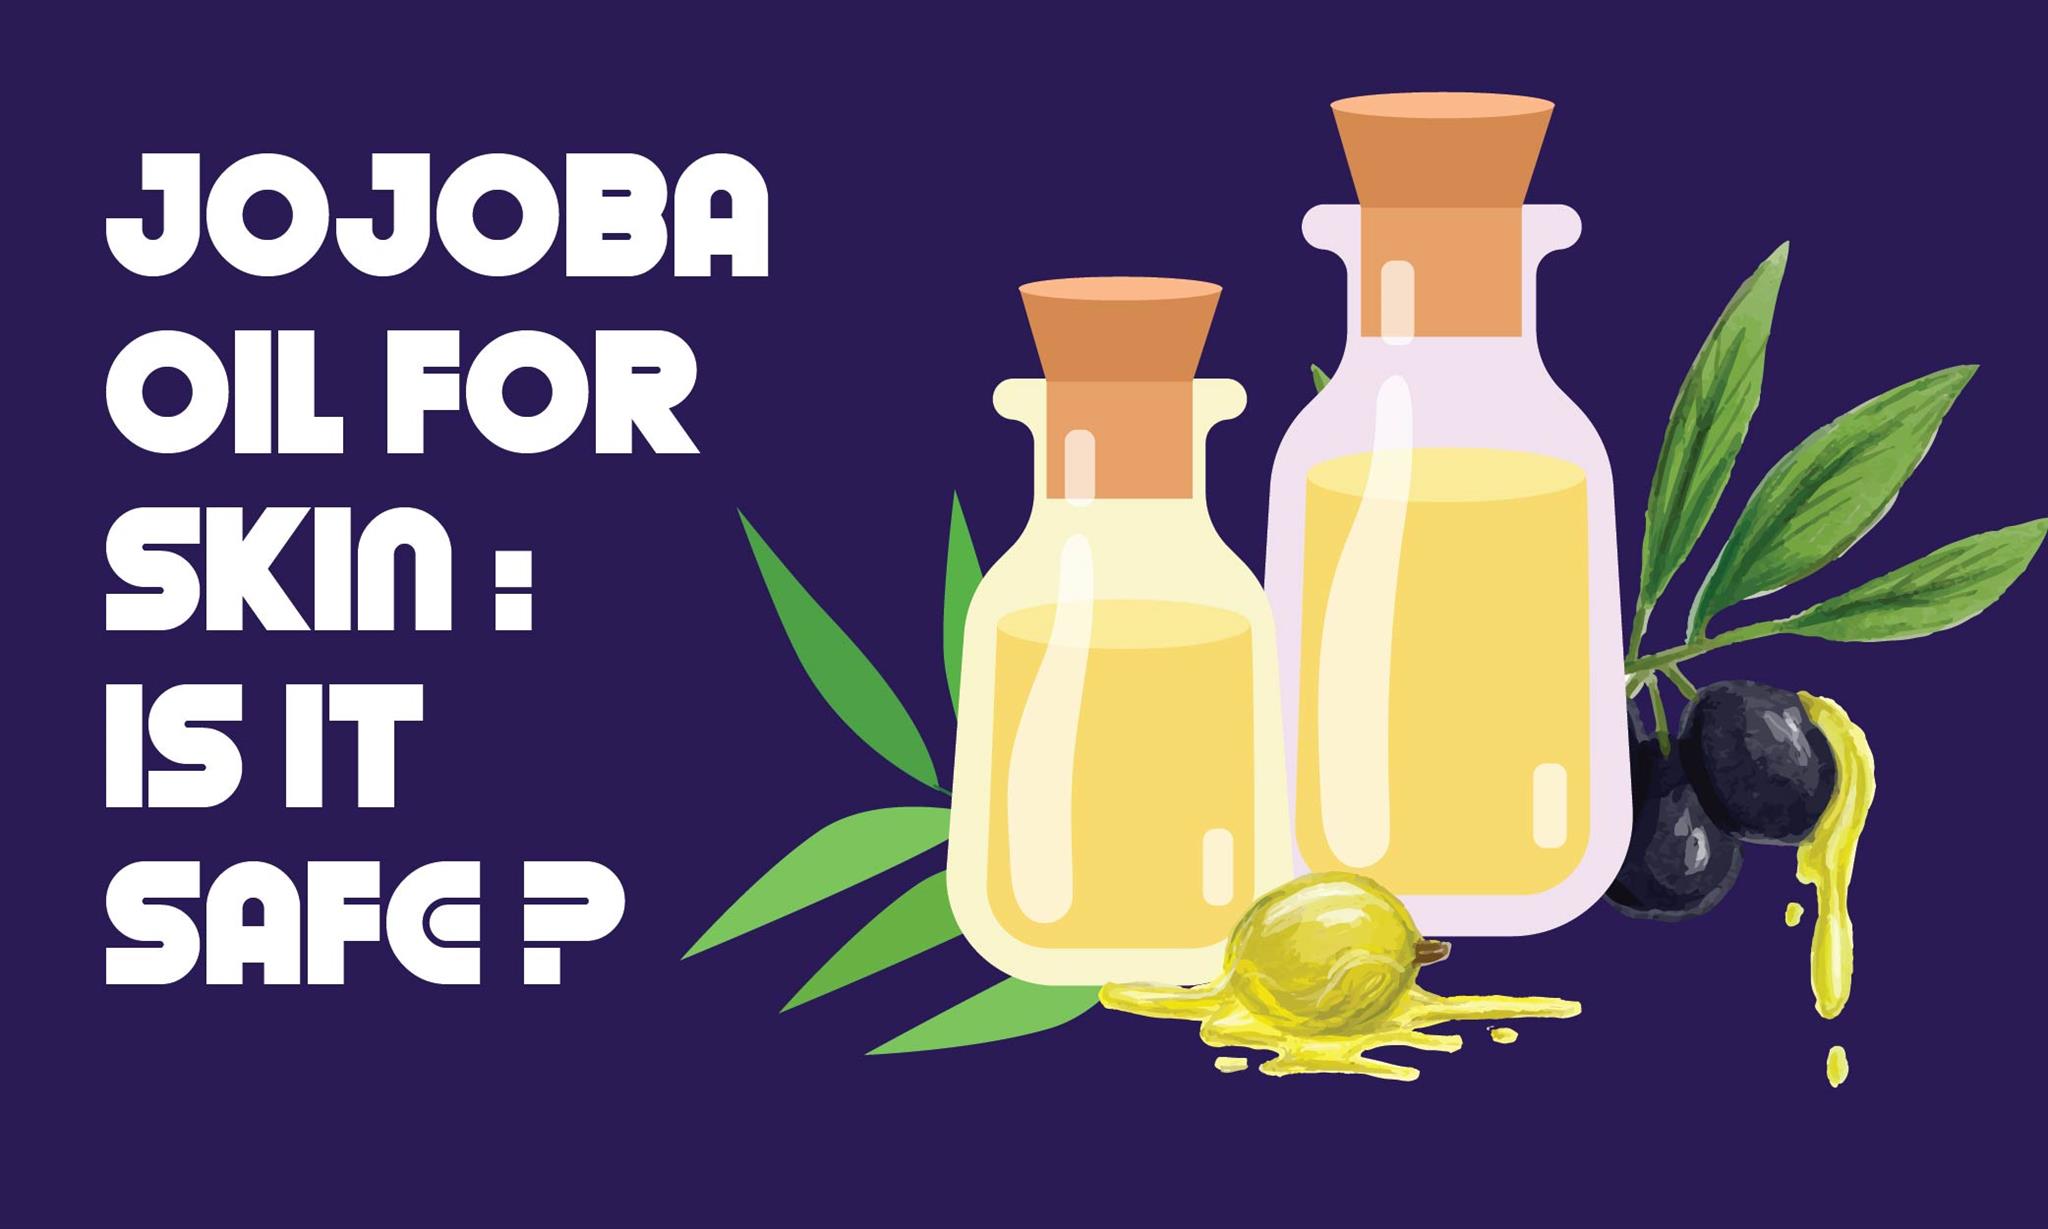 Jojoba Oil for Skin